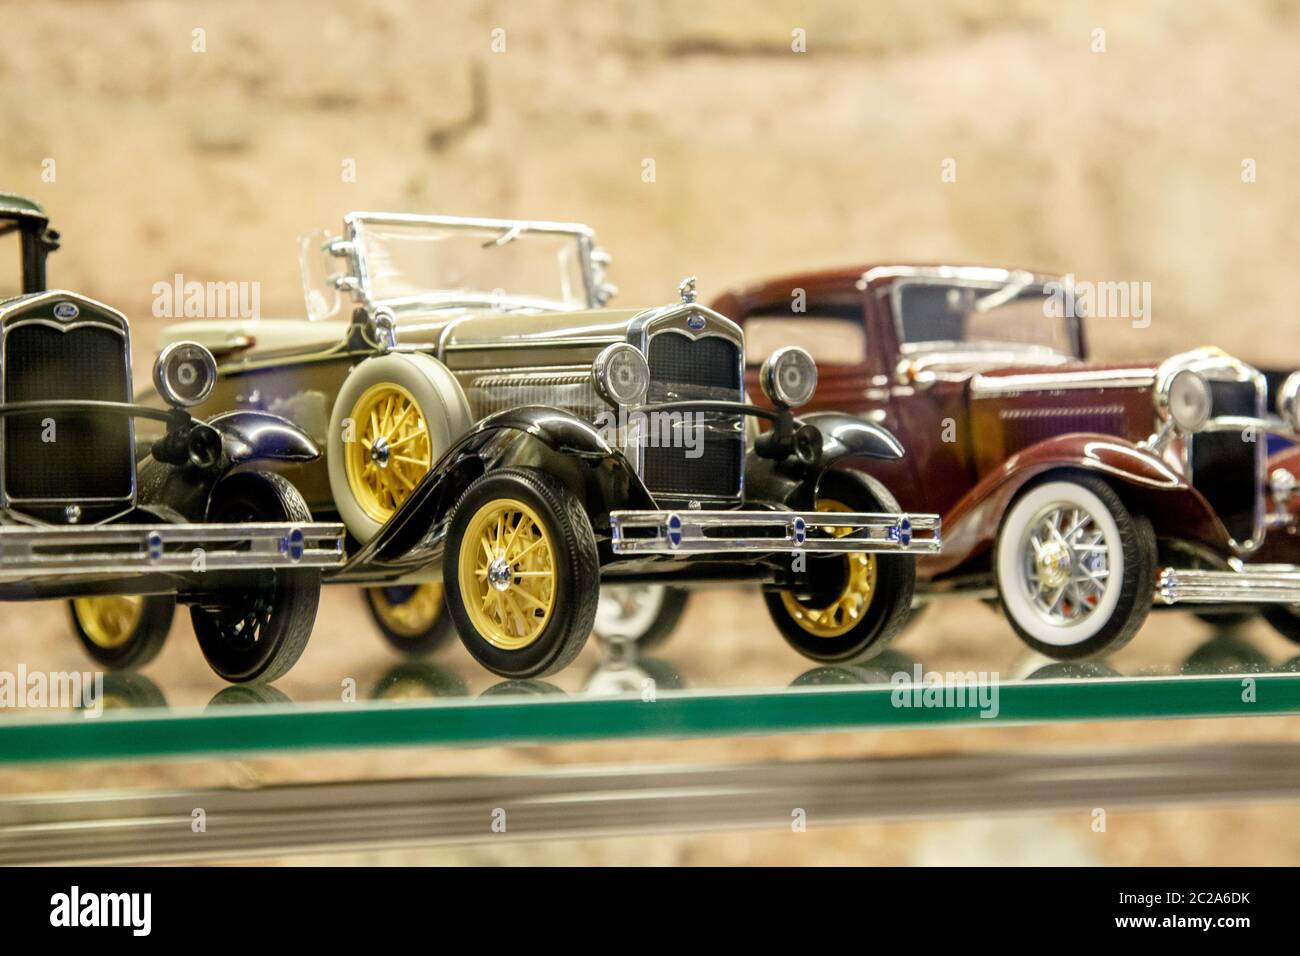 Istanbul, Türkei, 23. März 2019: Sammlungen verschiedener Auto-Miniaturmodelle im gleichen Maßstab. Einige von ihnen sind knapp und das Modell Stockfoto